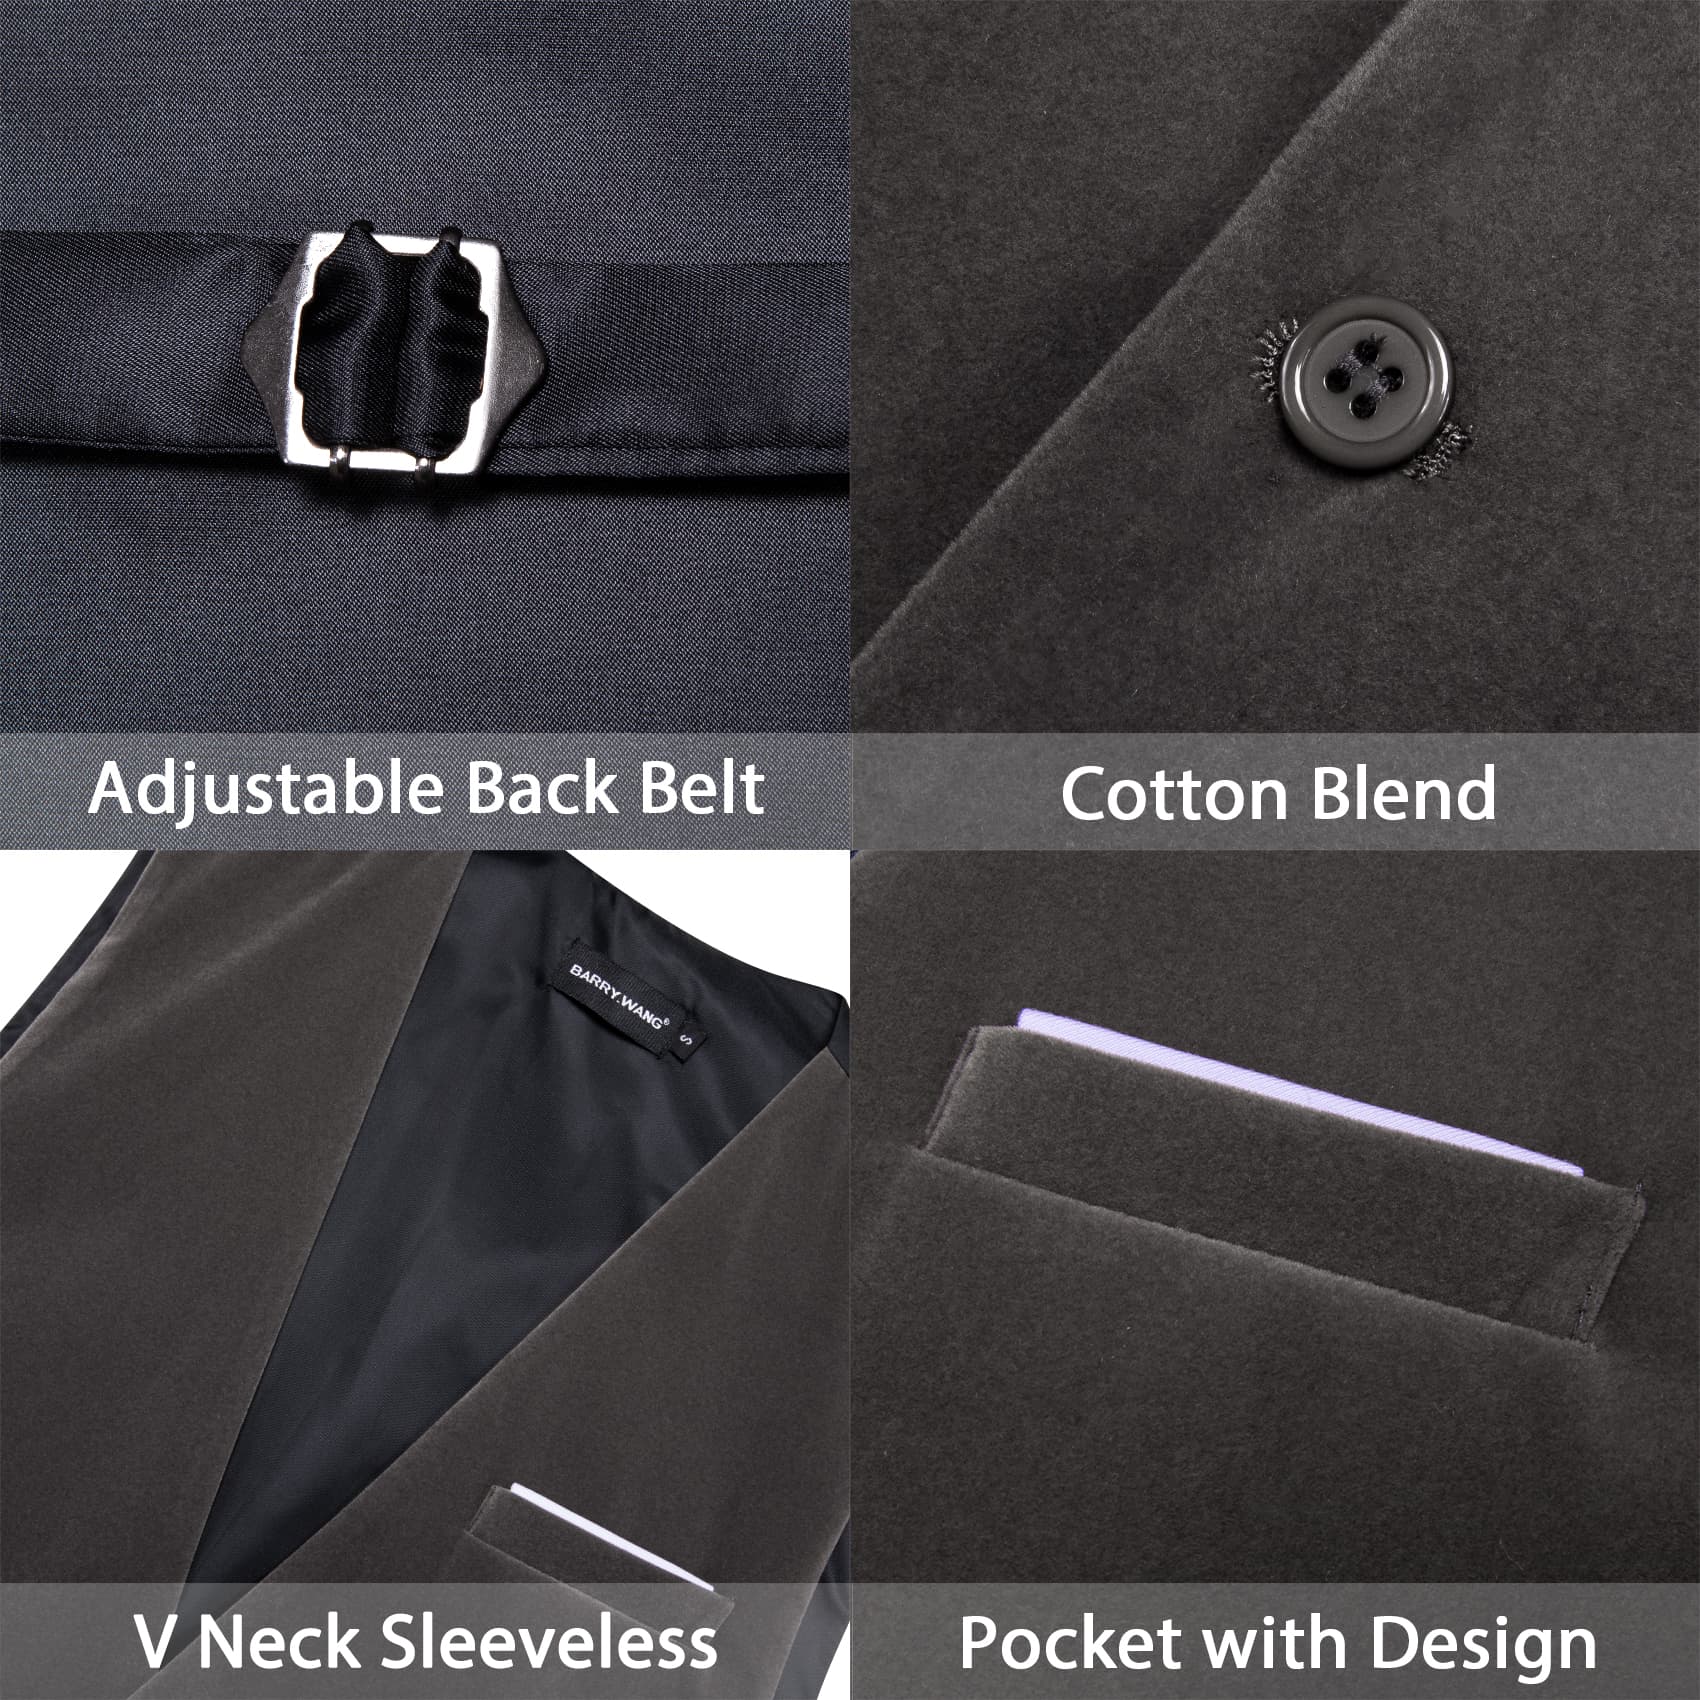 Barry Wang Waistcoat for Men Solid Shadow Grey Velvet Vest